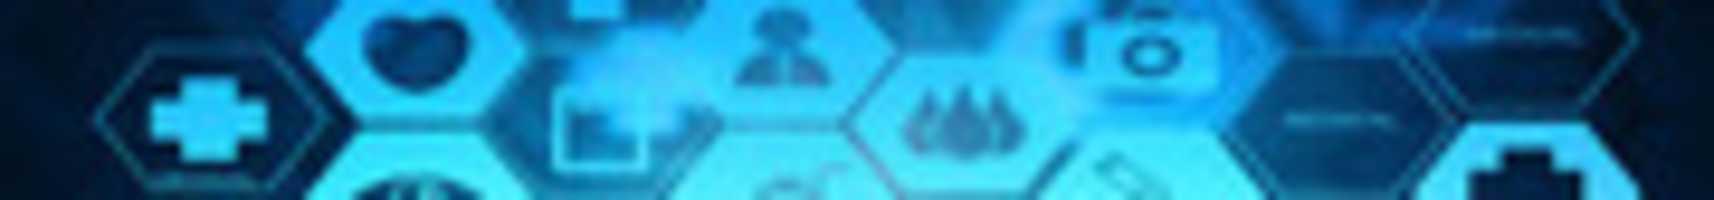 বিনামূল্যে ডাউনলোড করুন এমবিবিএস চীনে - চীন থেকে এমবিবিএস অধ্যয়ন করুন বিনামূল্যের ছবি বা ছবি GIMP অনলাইন ইমেজ এডিটর দিয়ে সম্পাদনা করতে